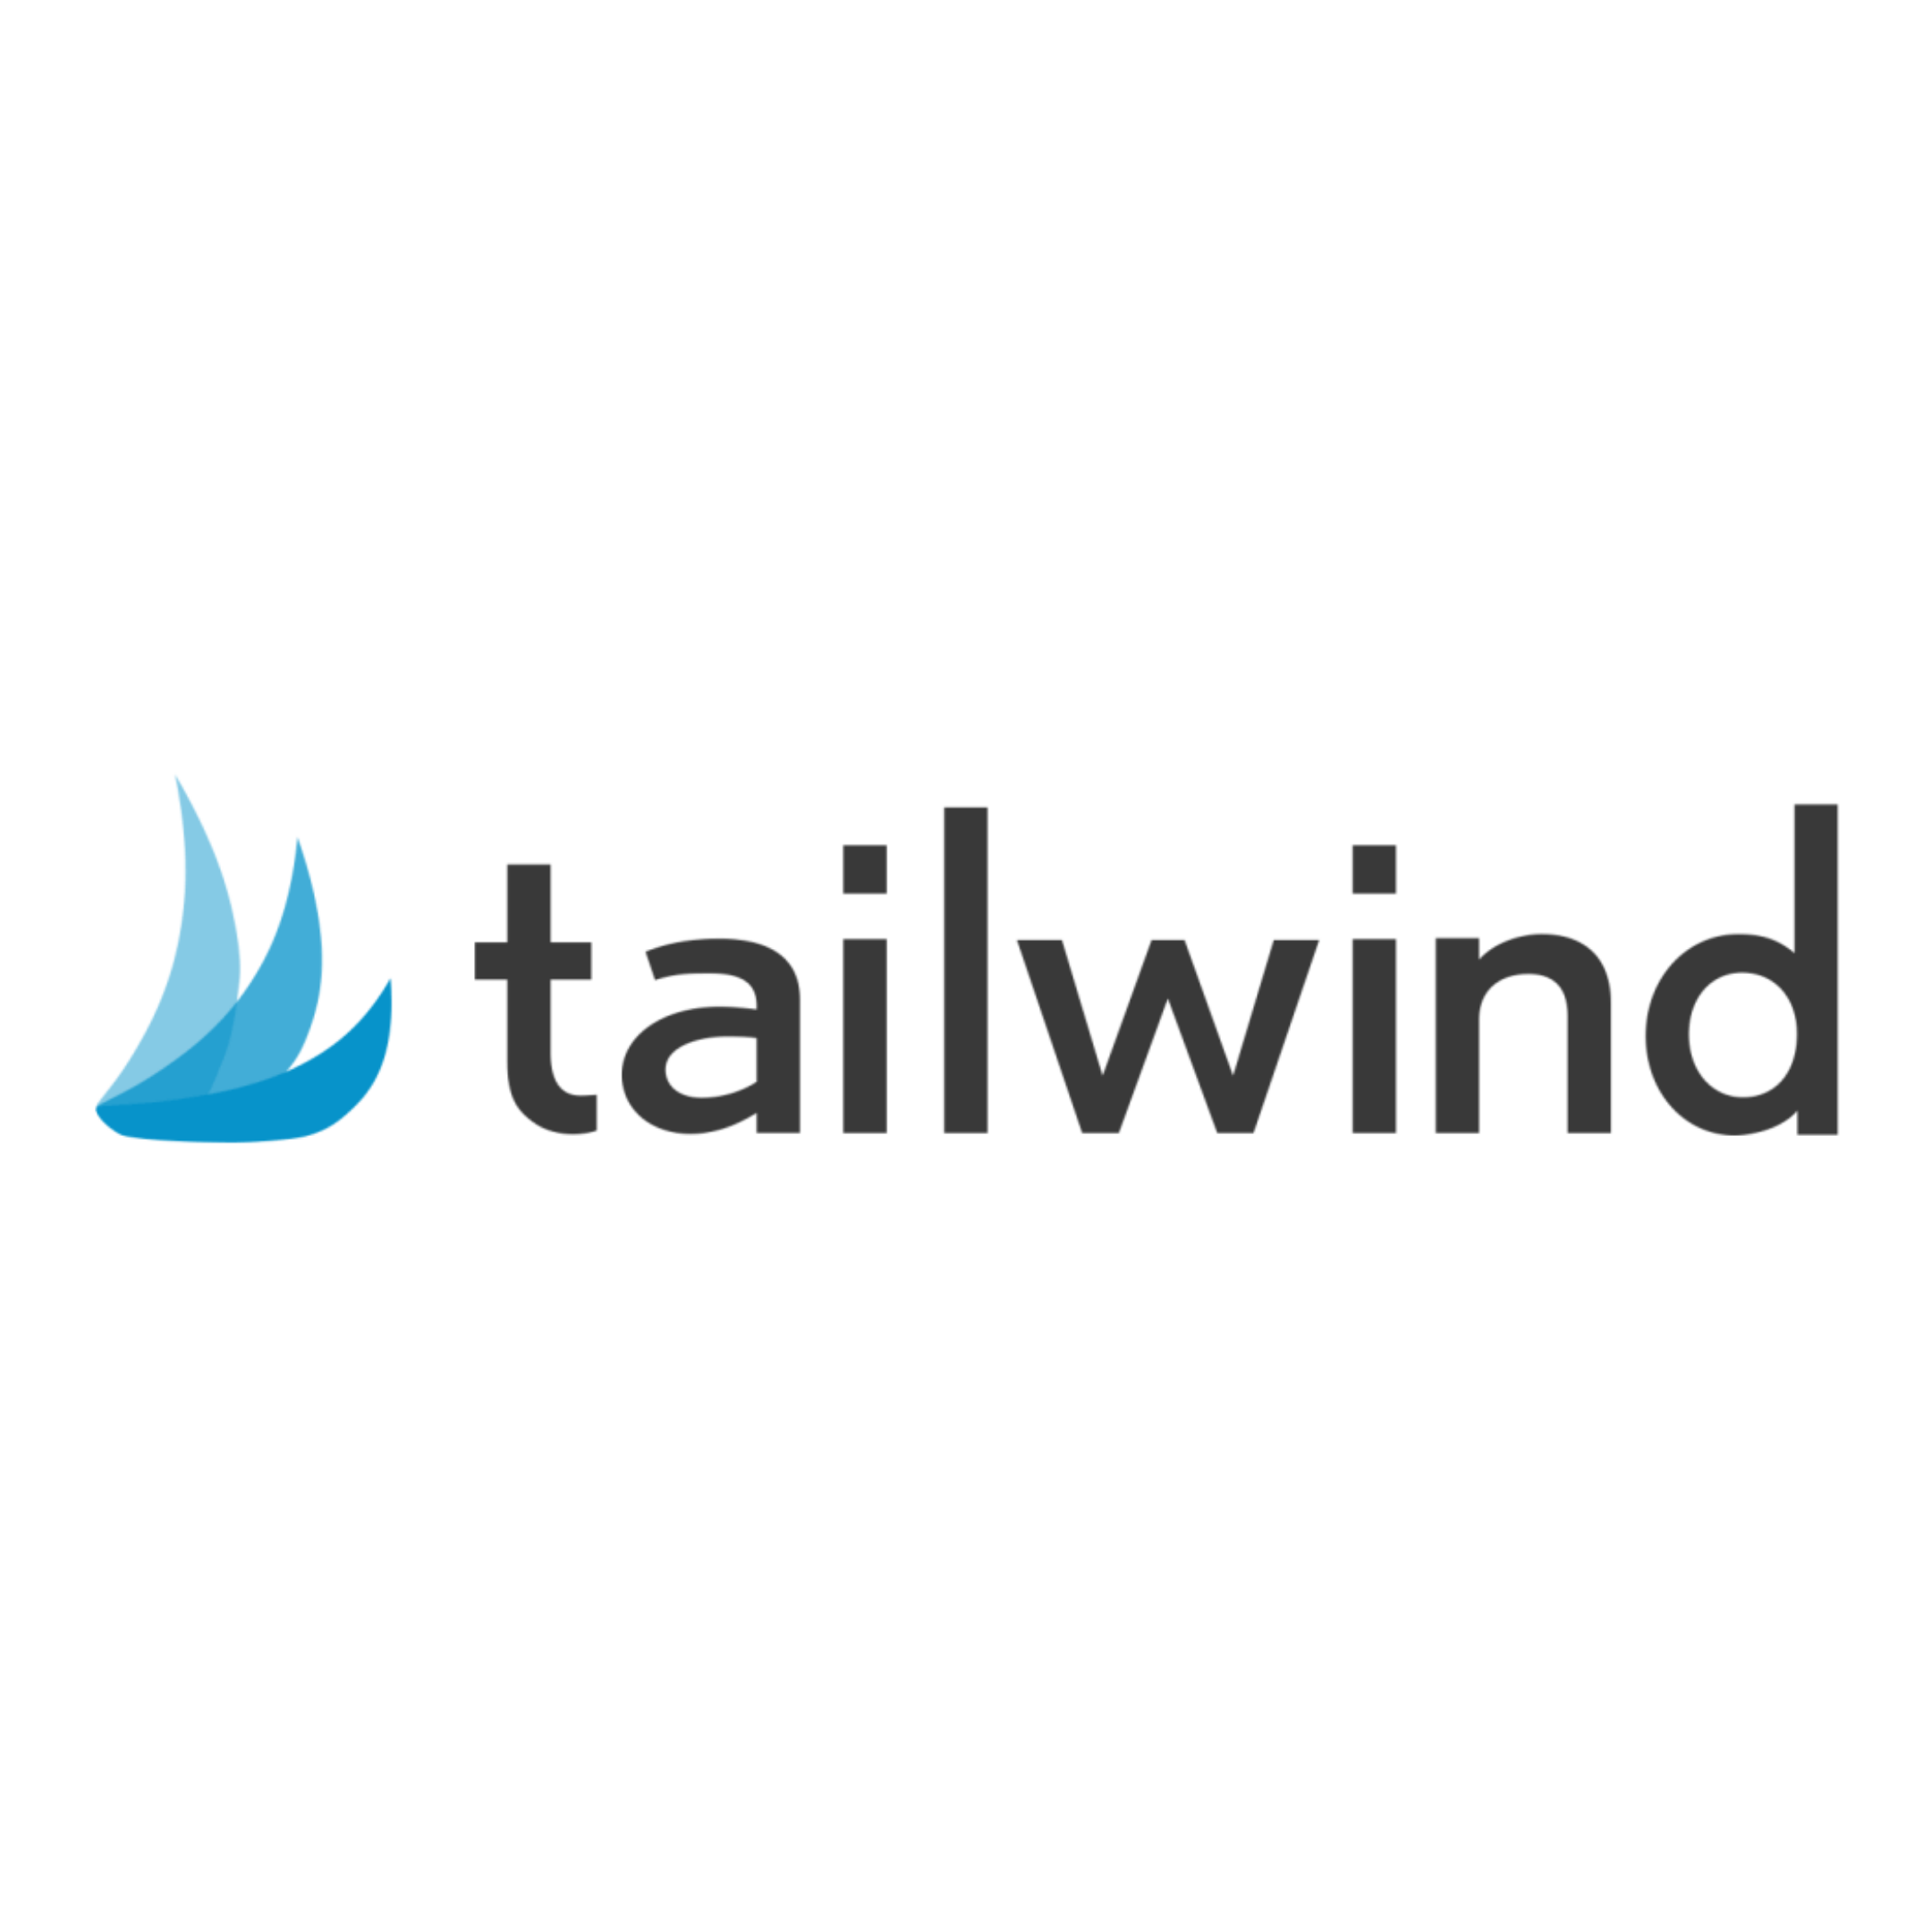 Tailwind height. Tailwind logo. Tailwind CSS. Tailwind Airlines логотип. Tailwind логотип 2022.